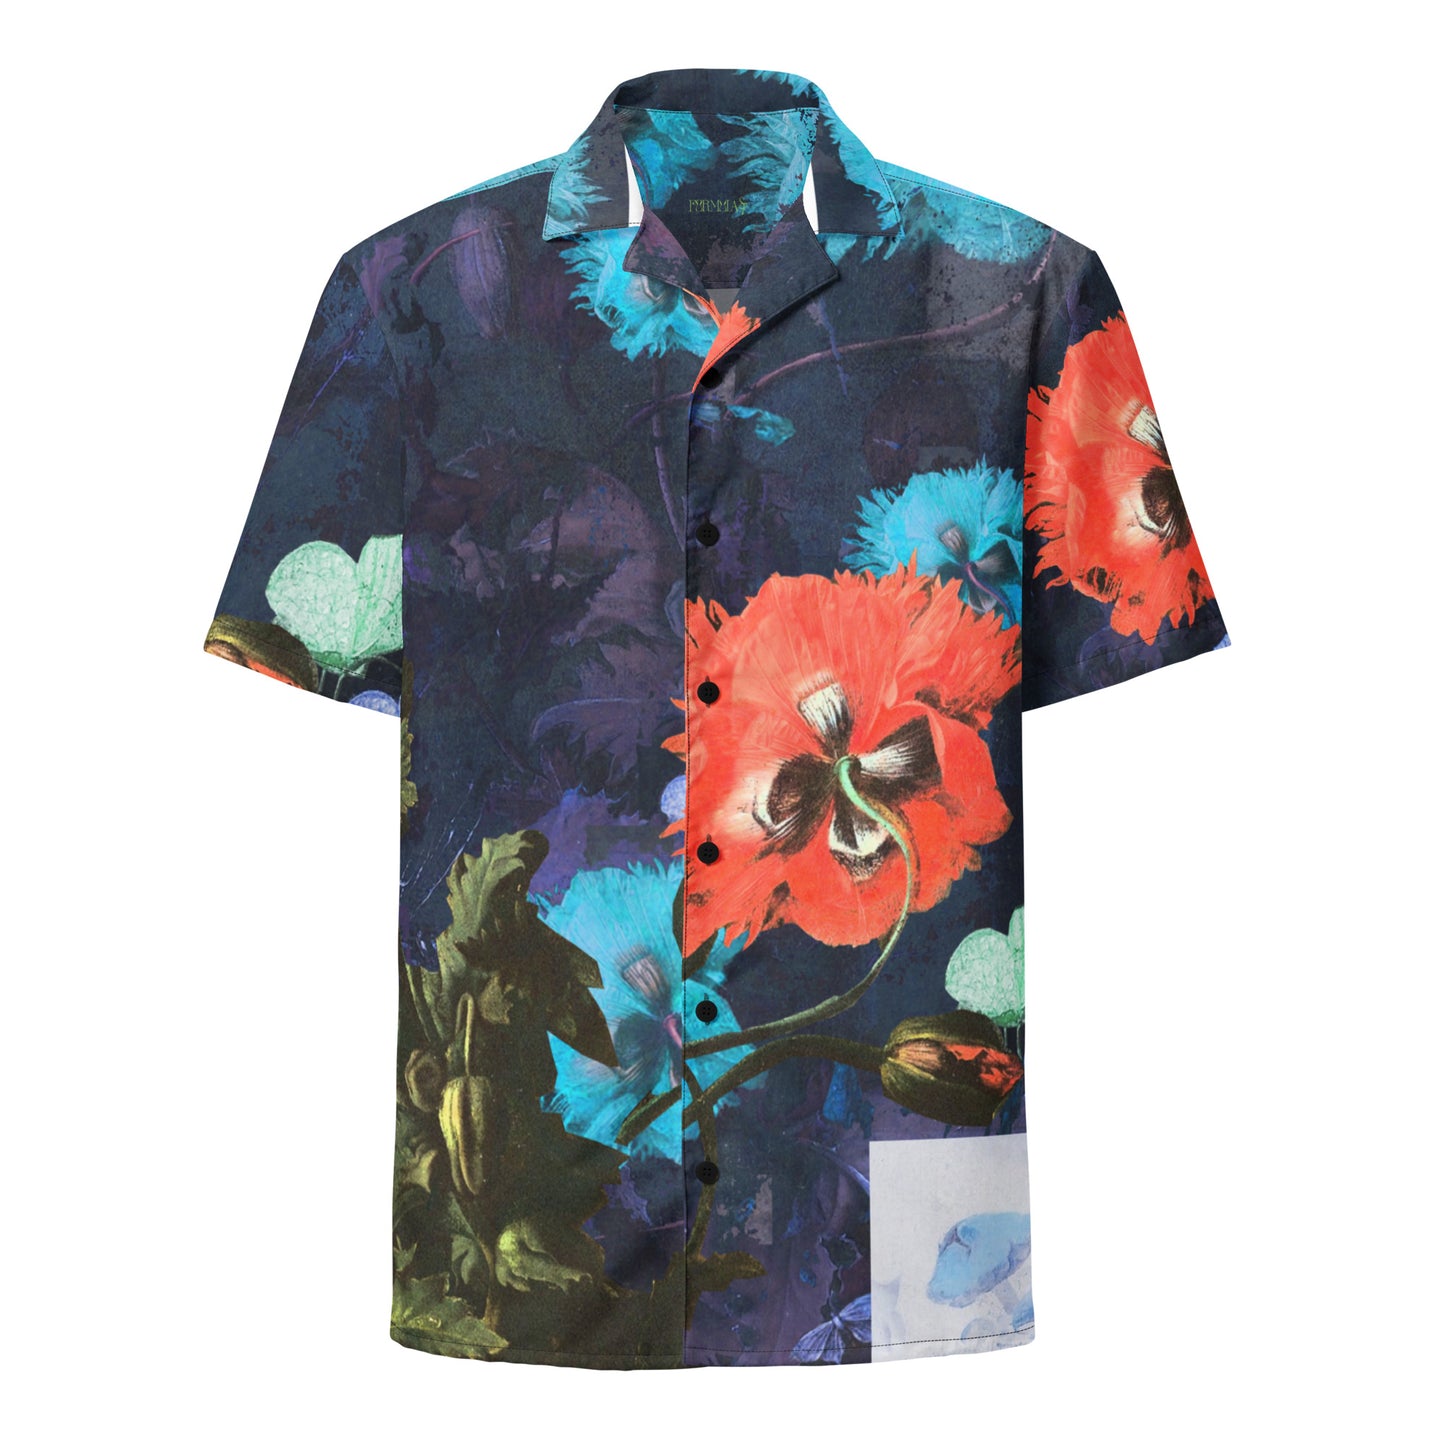 Exquisite Floral Unisex button down shirt